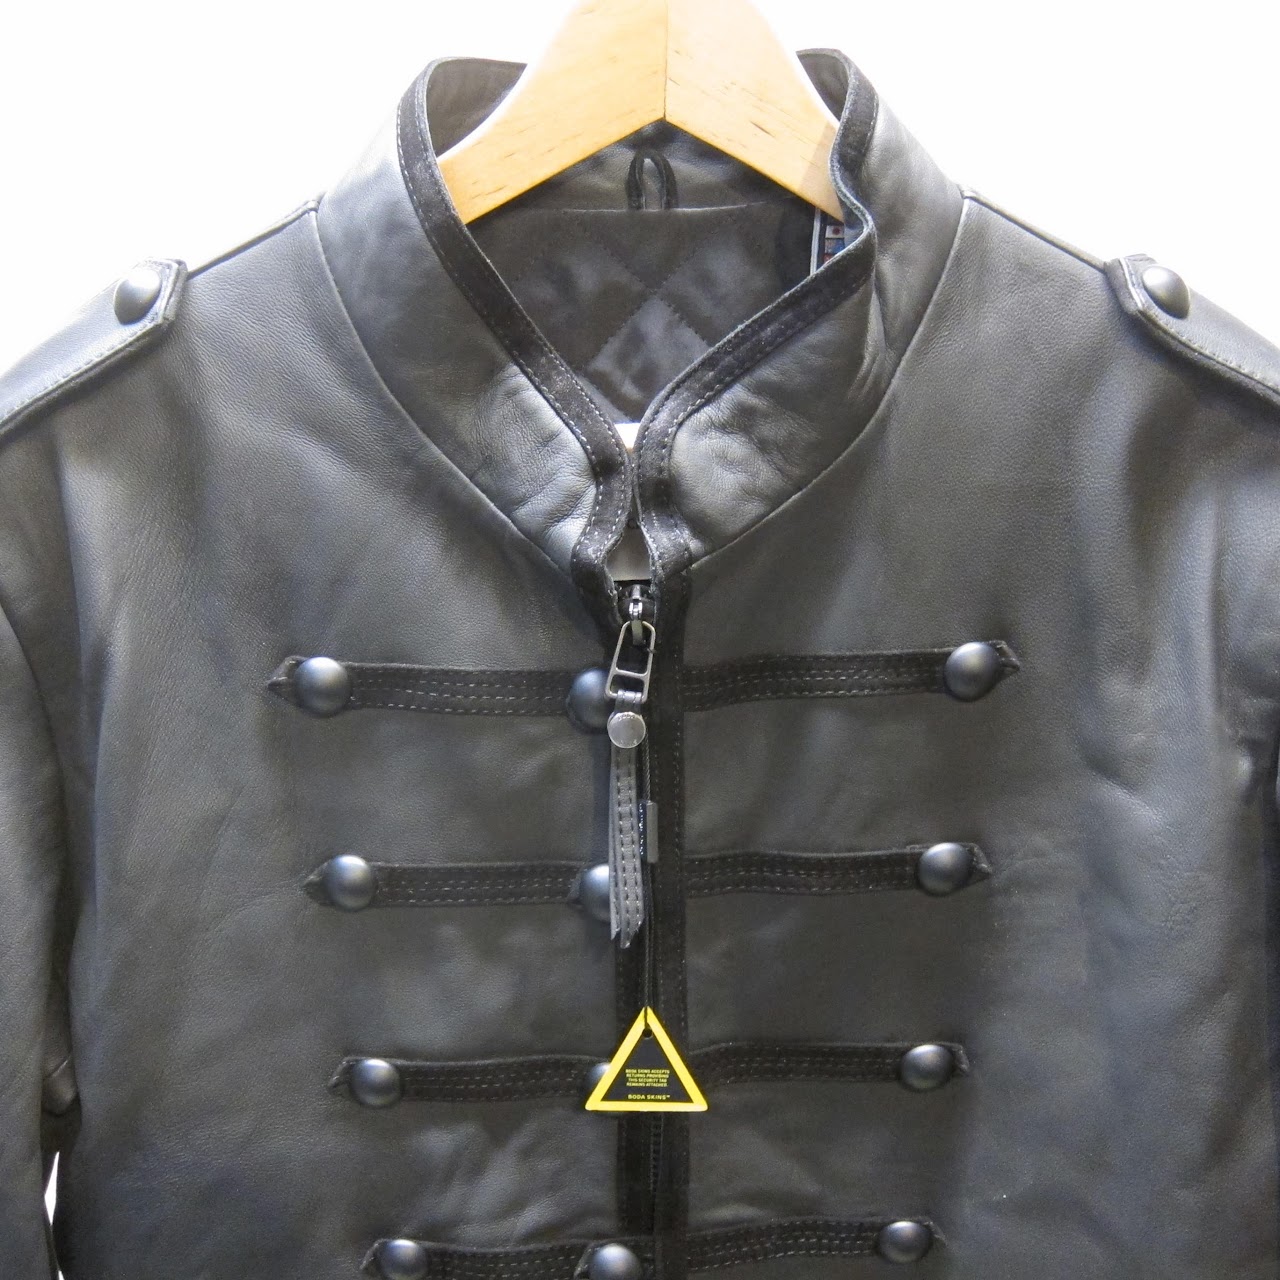 Boda Skins Leather Jacket